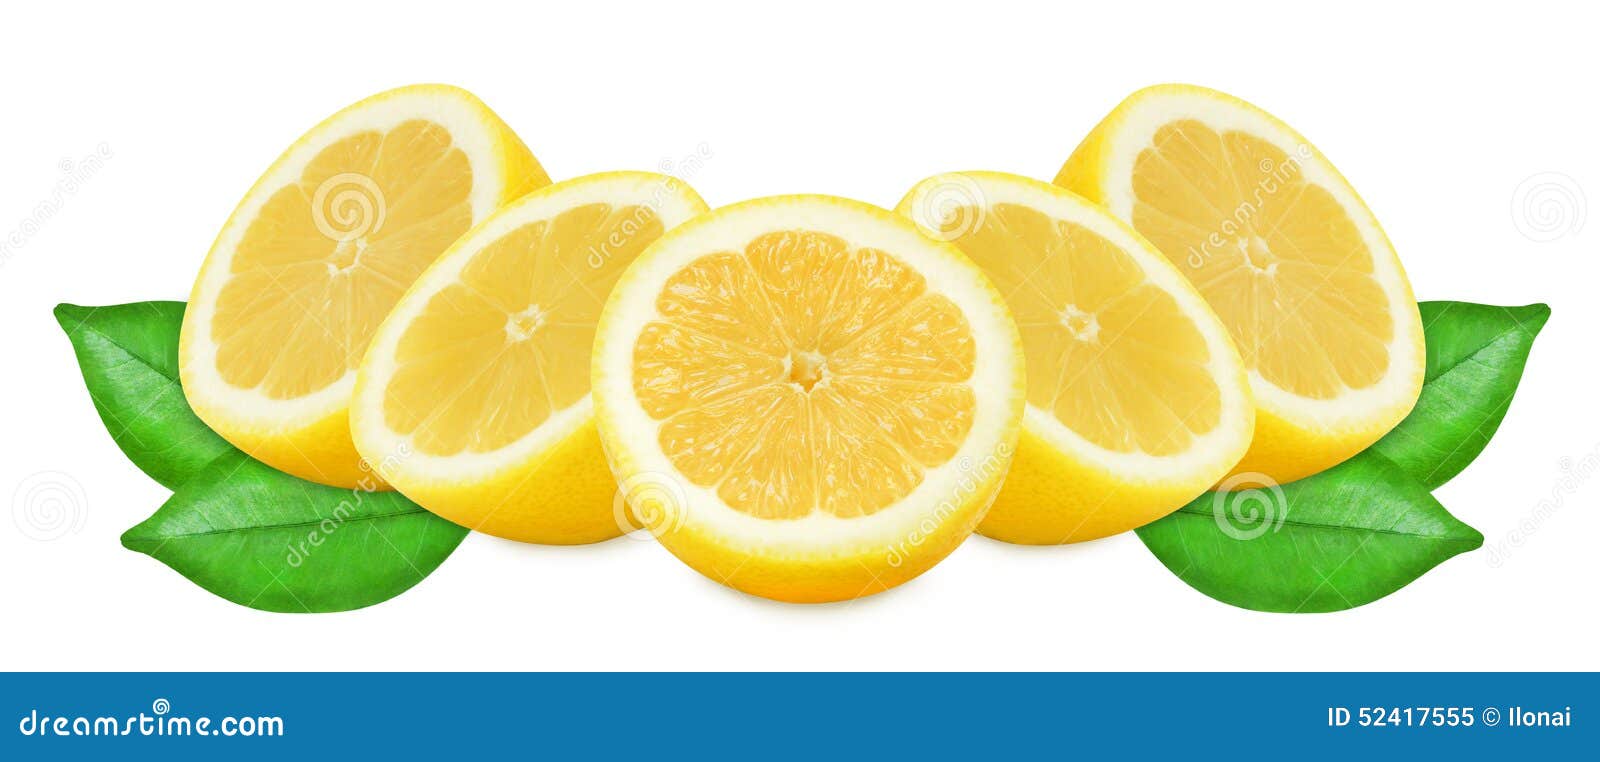 在被隔绝的白色背景的水多的黄色柠檬. 与叶子的水多的黄色柠檬在被隔绝的白色背景